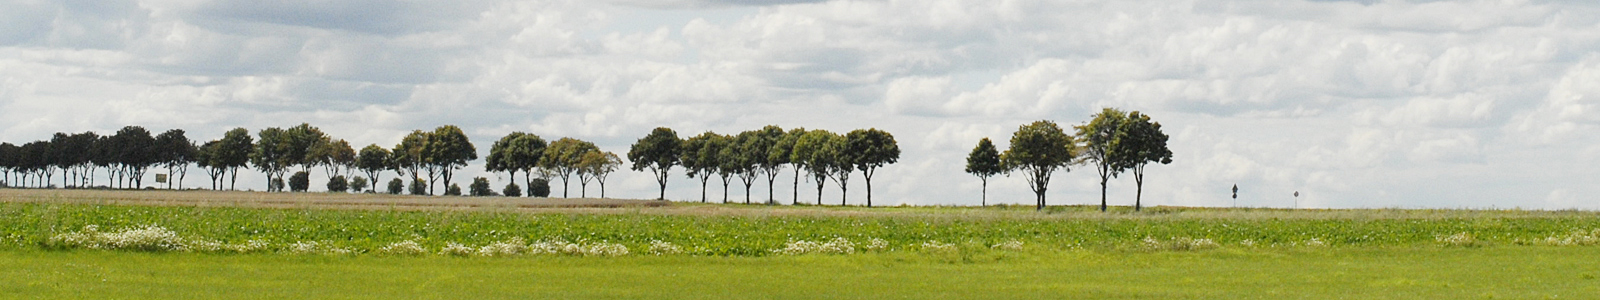 Baumallee mit Feld im Vordergrund ©Feuerbach